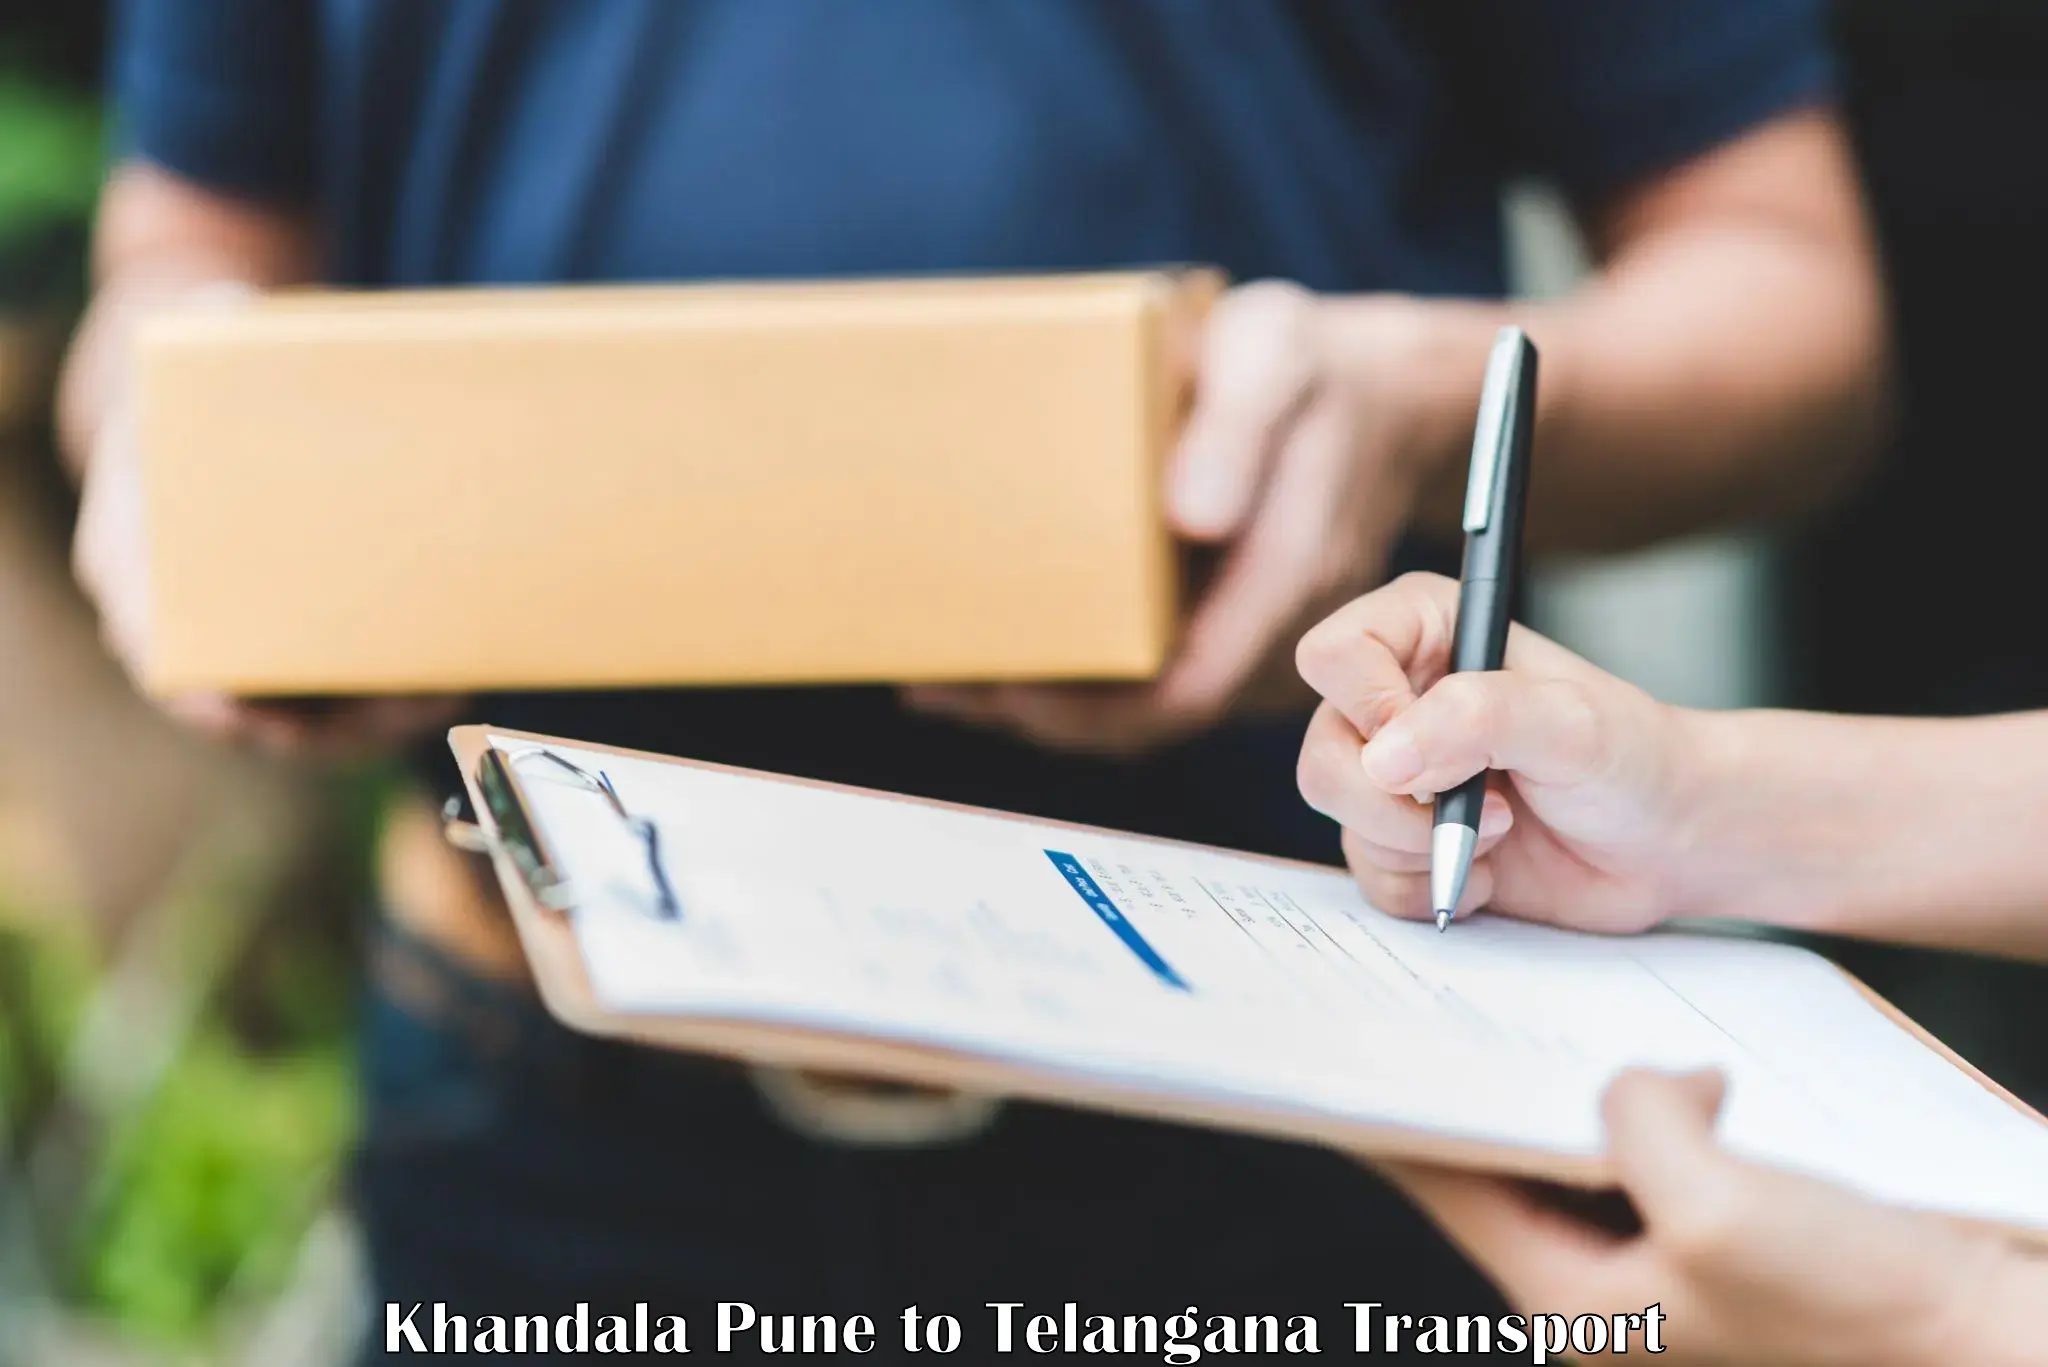 Land transport services Khandala Pune to Gangadhara